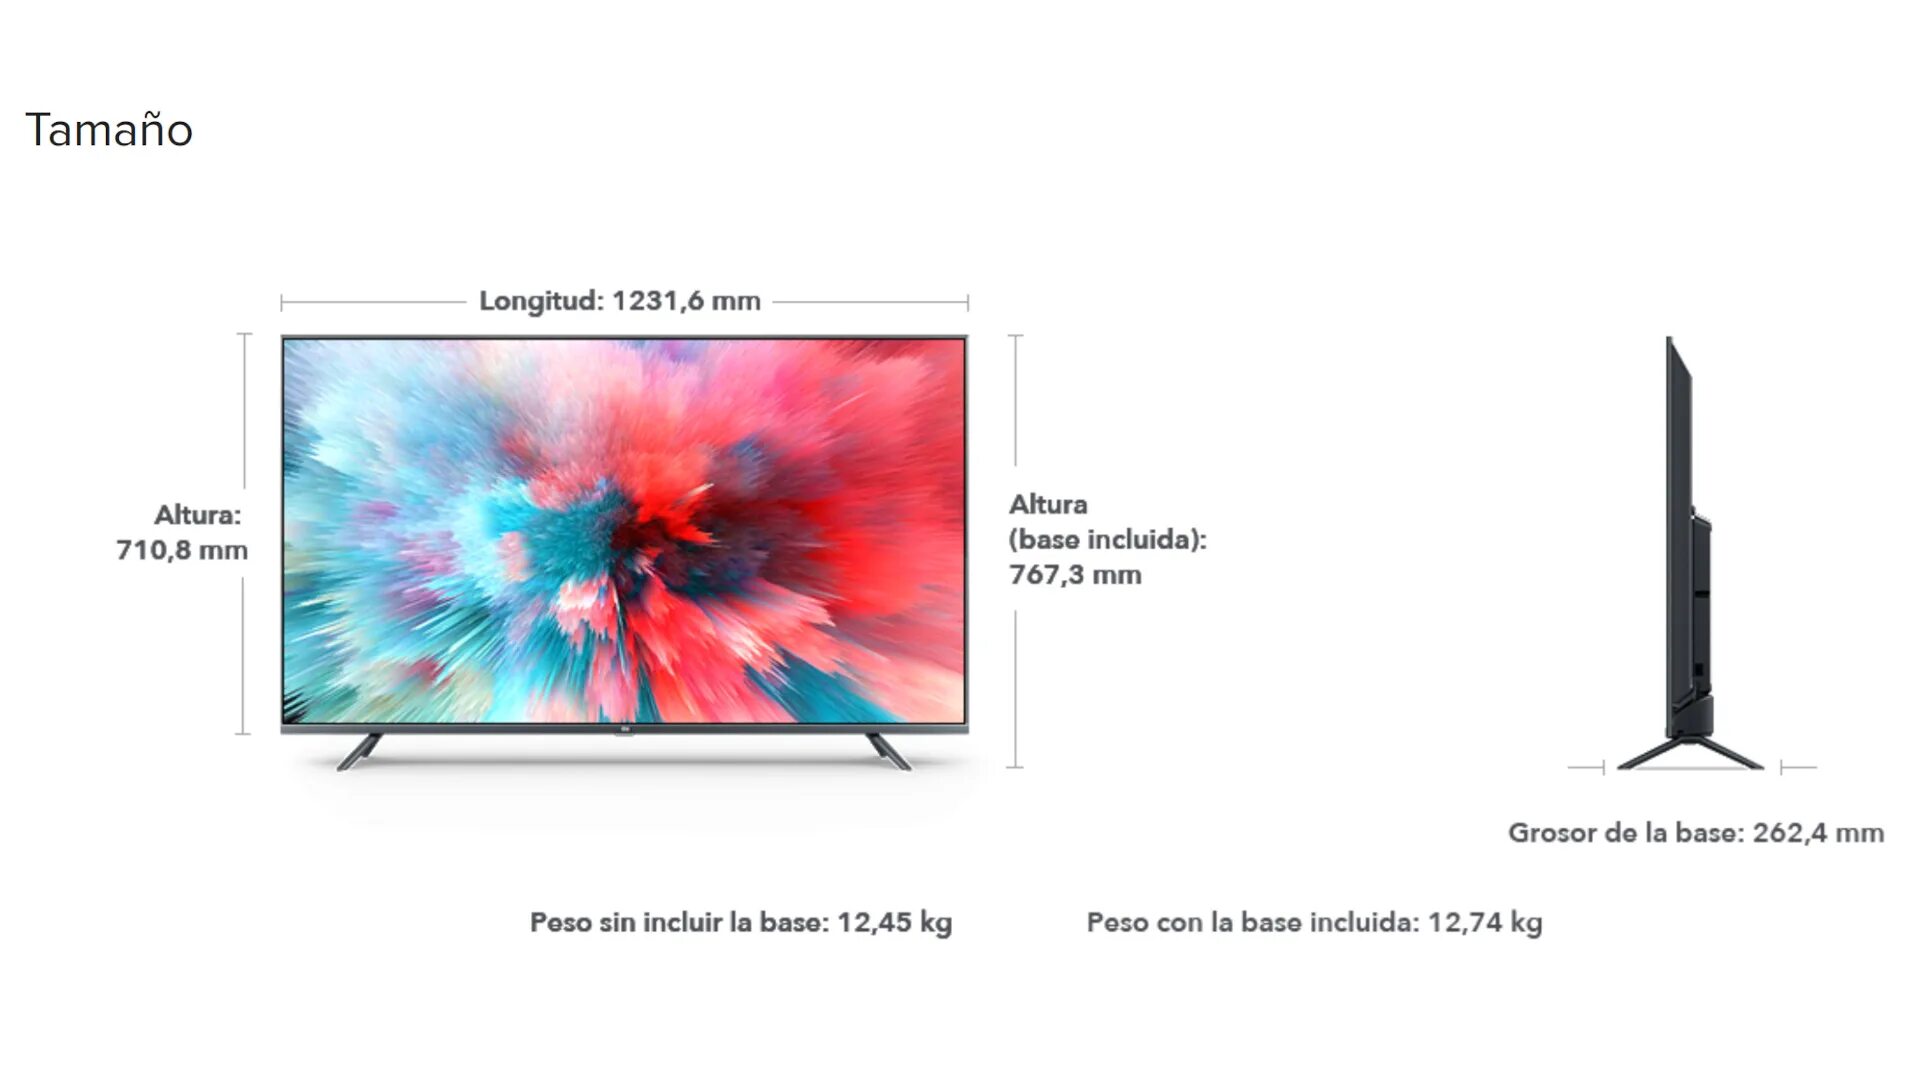 Высота телевизора 50 см. Телевизор самсунг 55 дюймов габариты в см. Размер телевизора самсунг 50 дюймов. Xiaomi mi TV 4s 55 Размеры. Телевизор самсунг 55 Размеры.